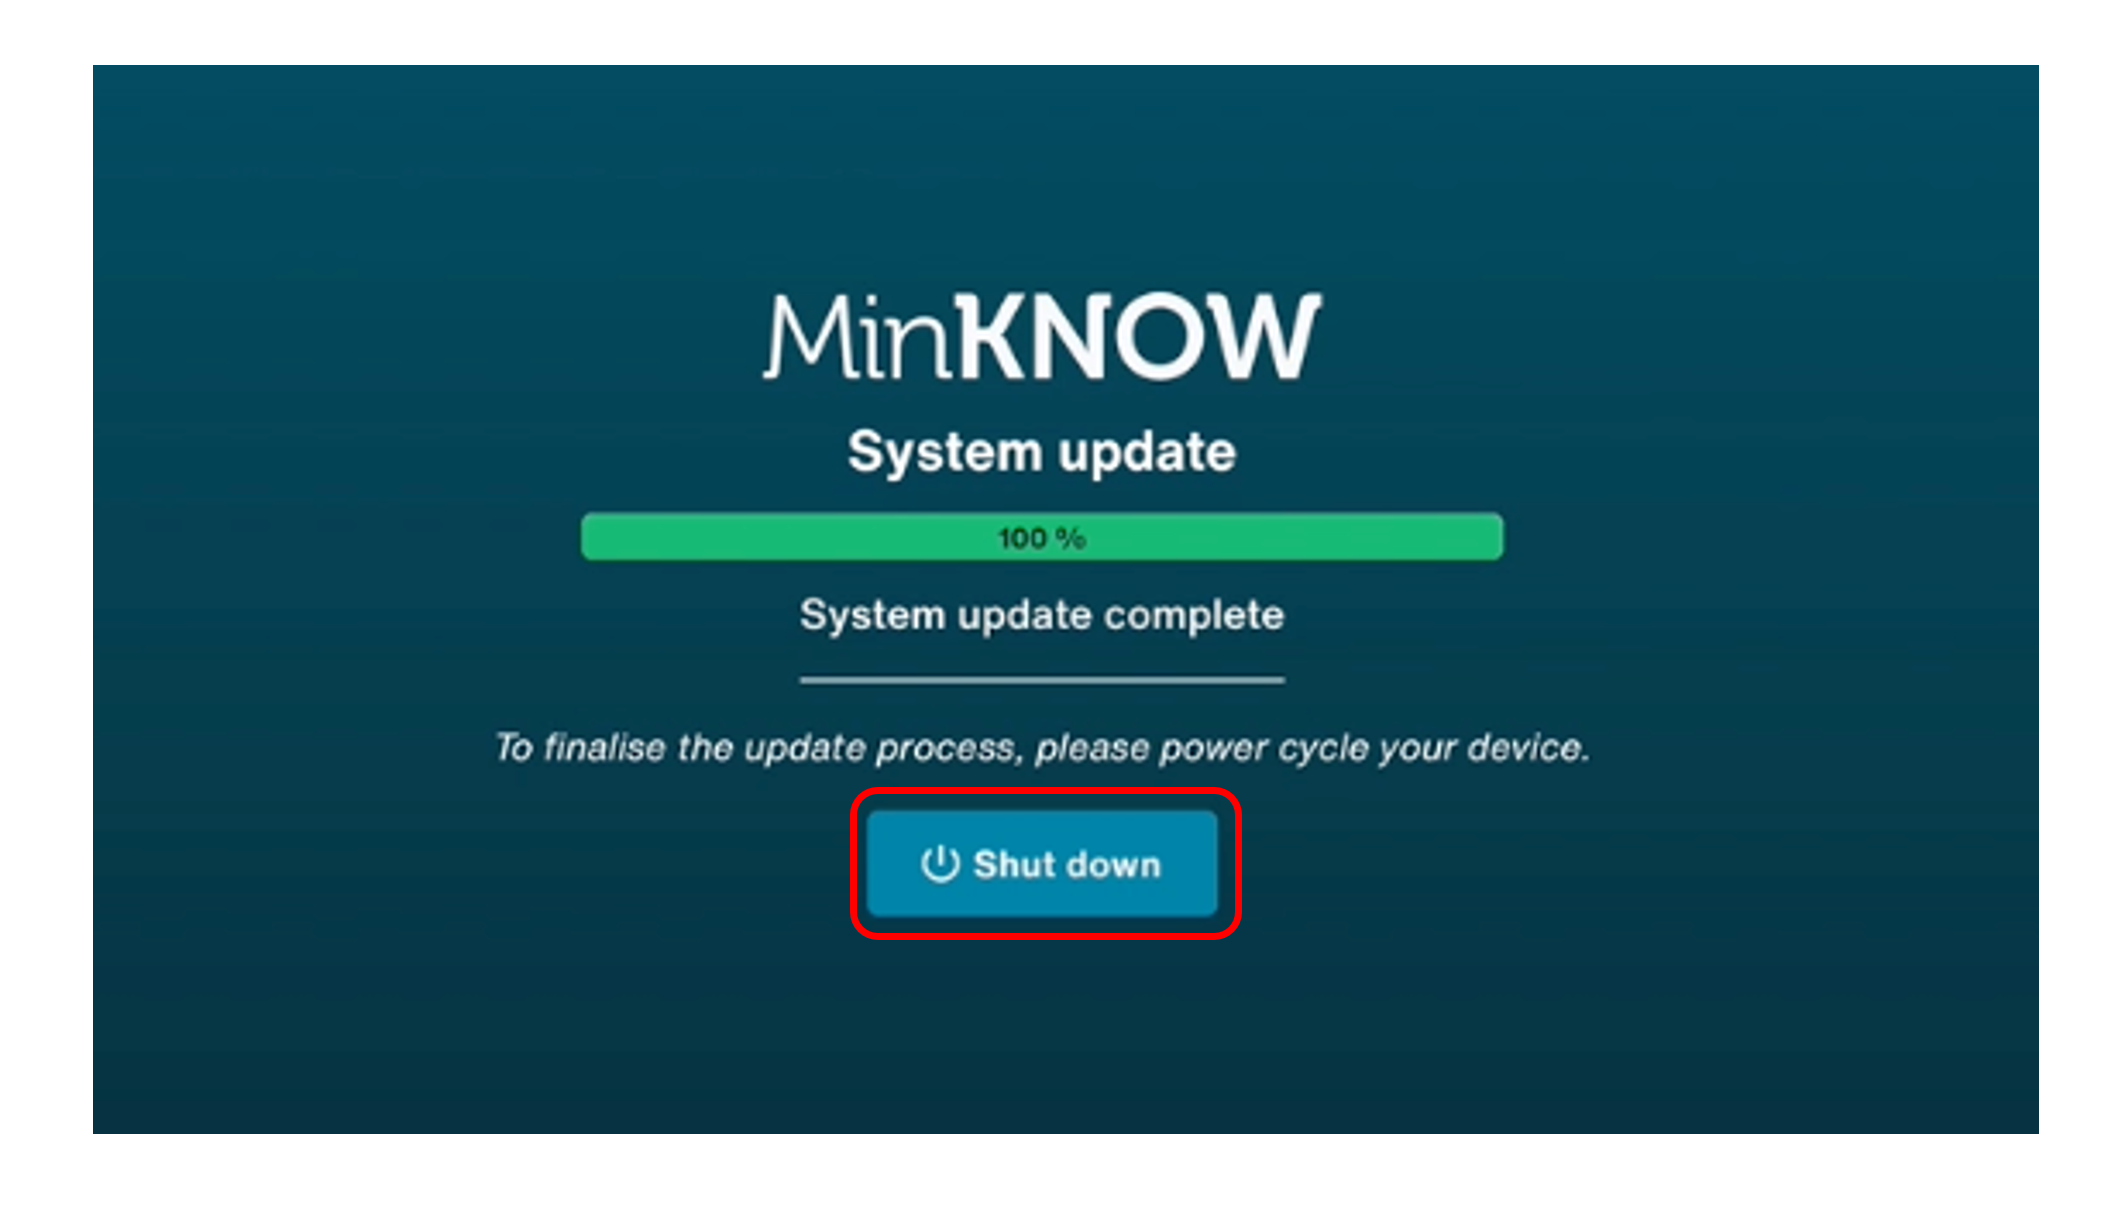 MinKNOW system update reboot